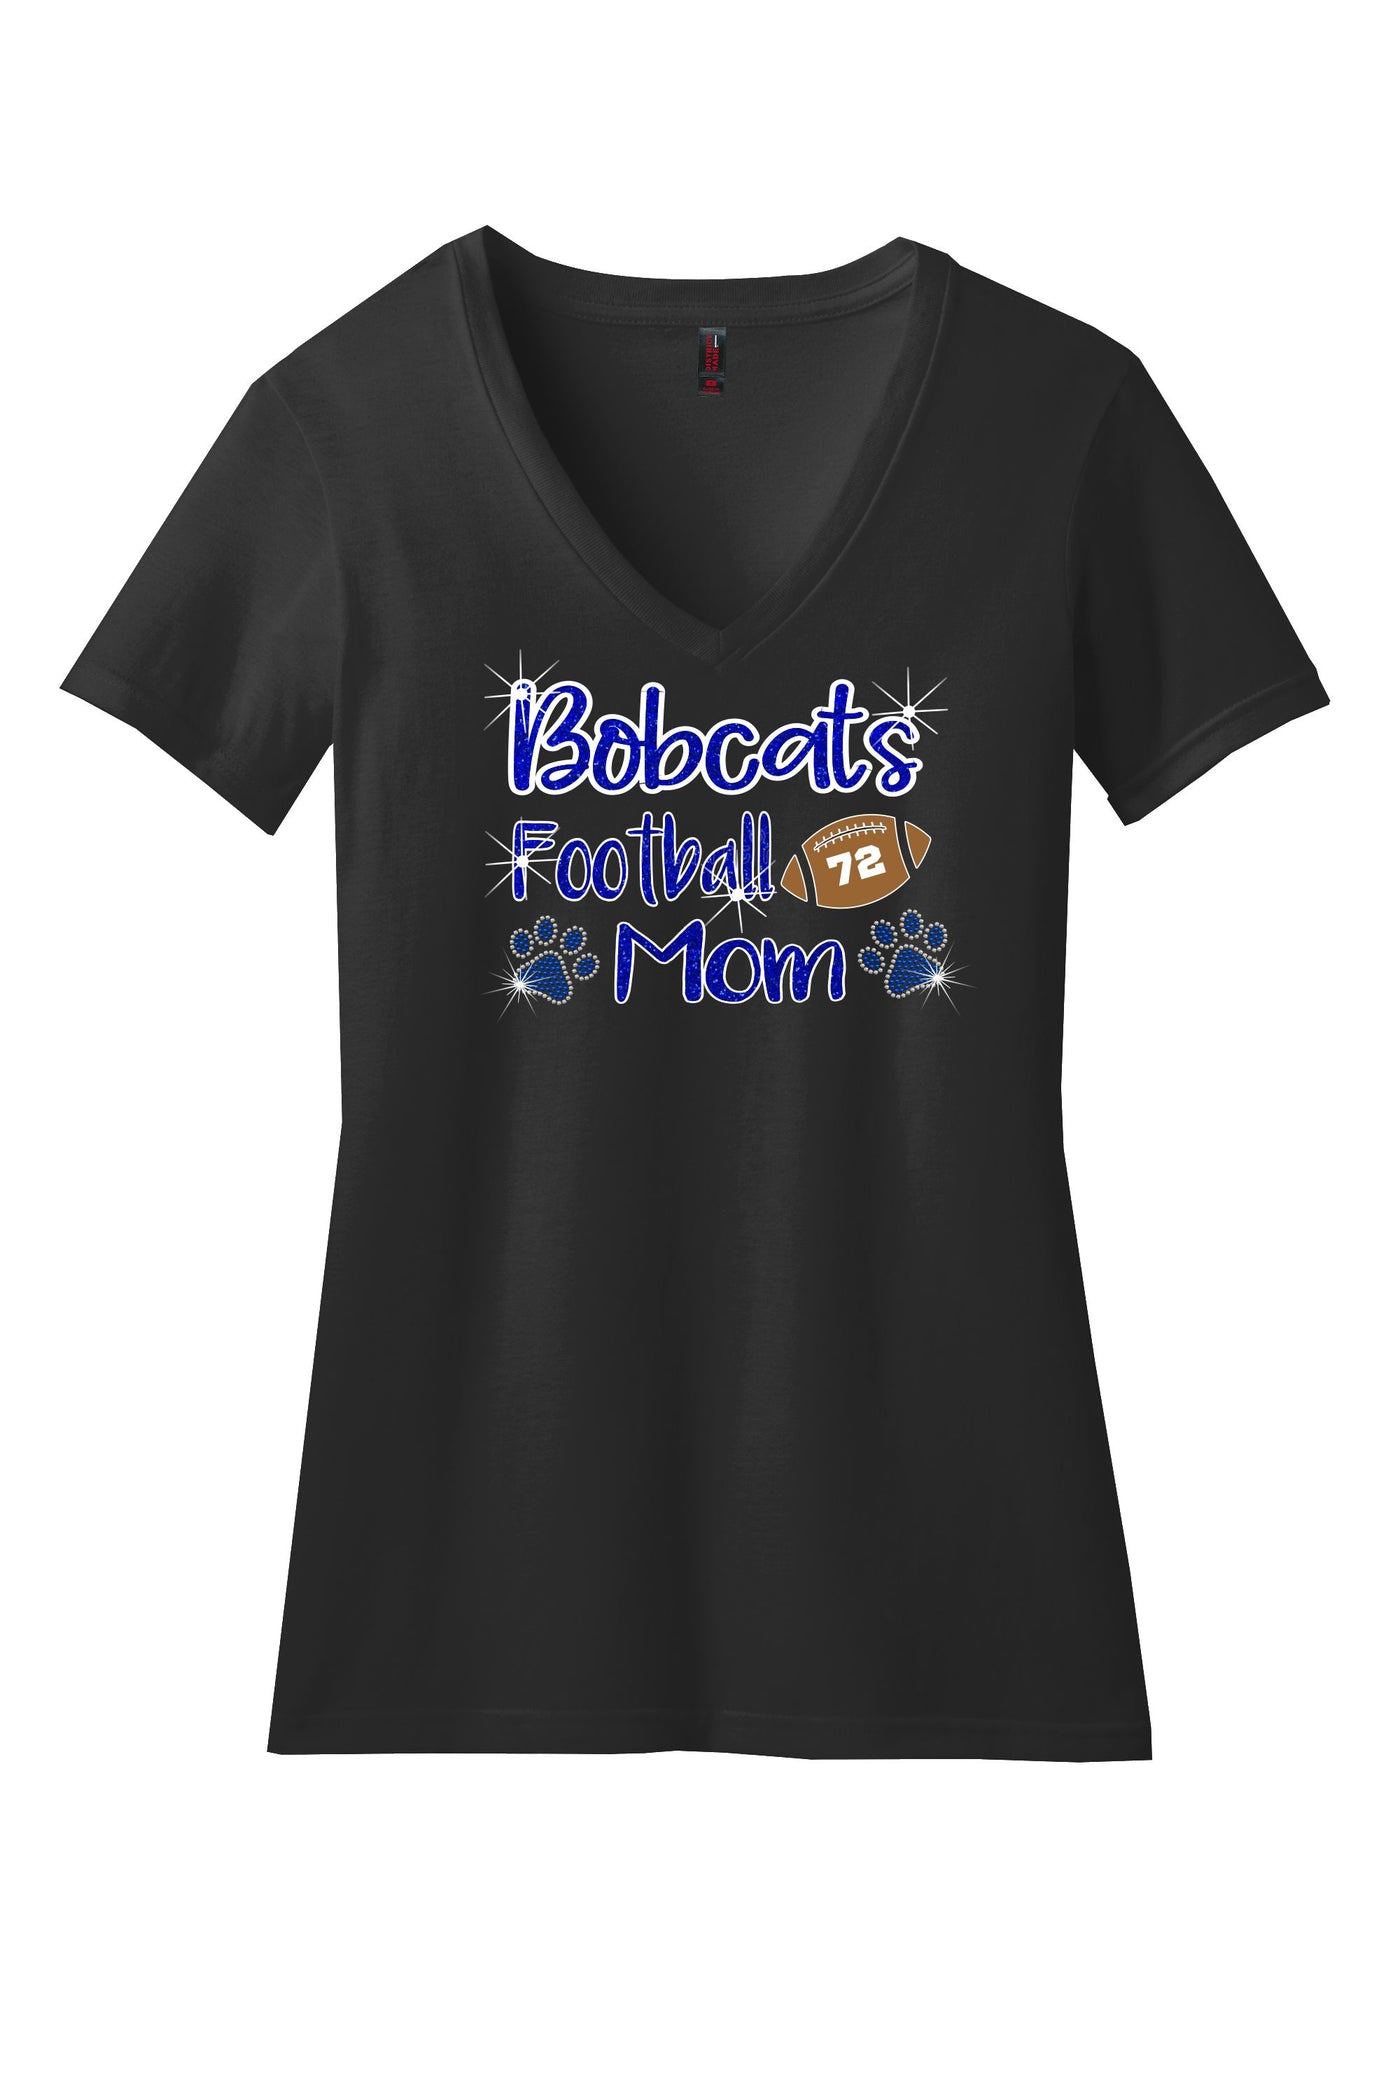 Bobcat FOOTBALL Mom V-Neck Shirt